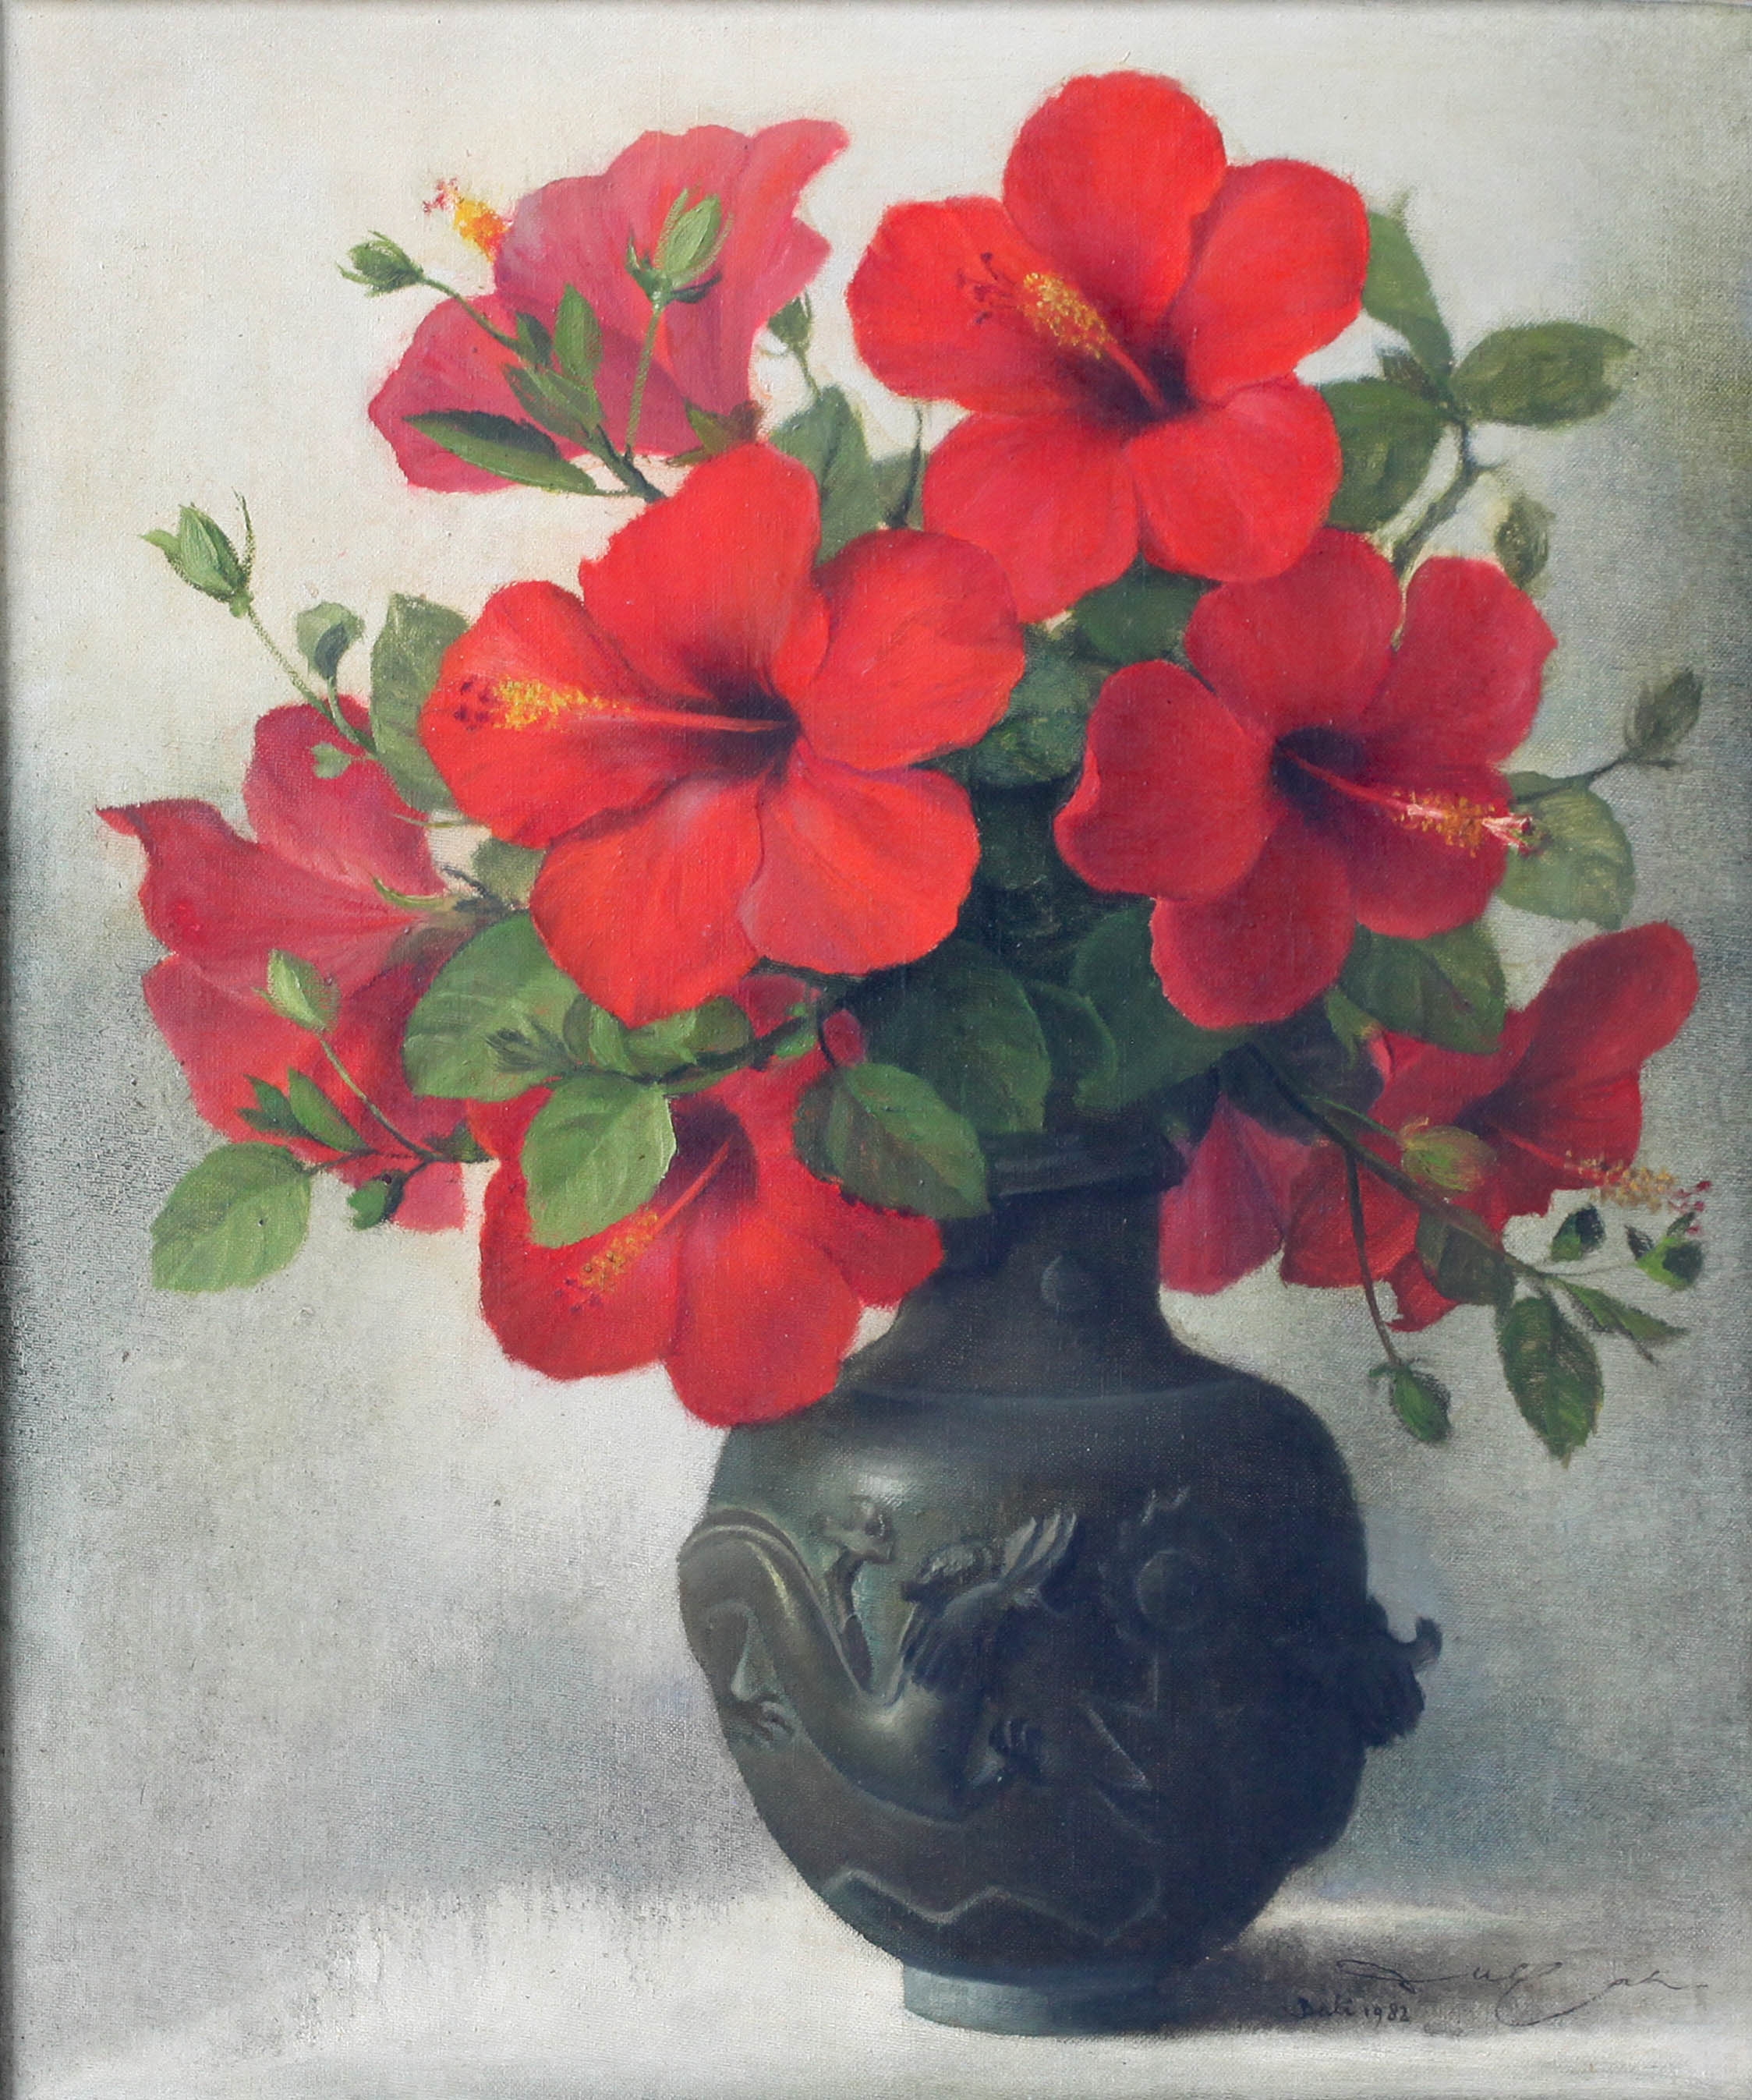 Bunga Sepatu by Dullah, 1982